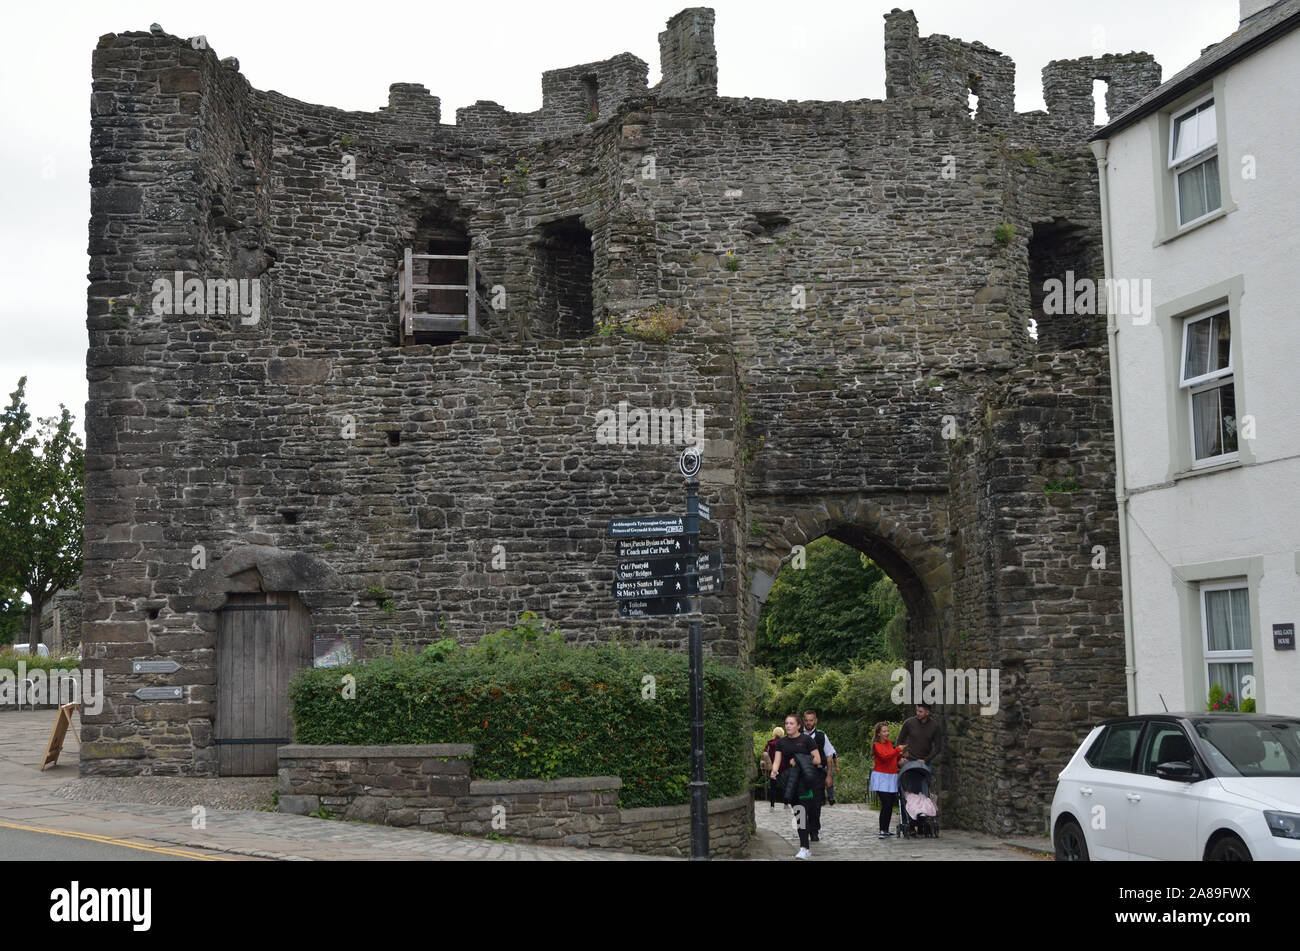 La porte de l'usine, Conwy Castell, Conway Castle, North Wales, UK, Royaume-Uni, Europe Banque D'Images